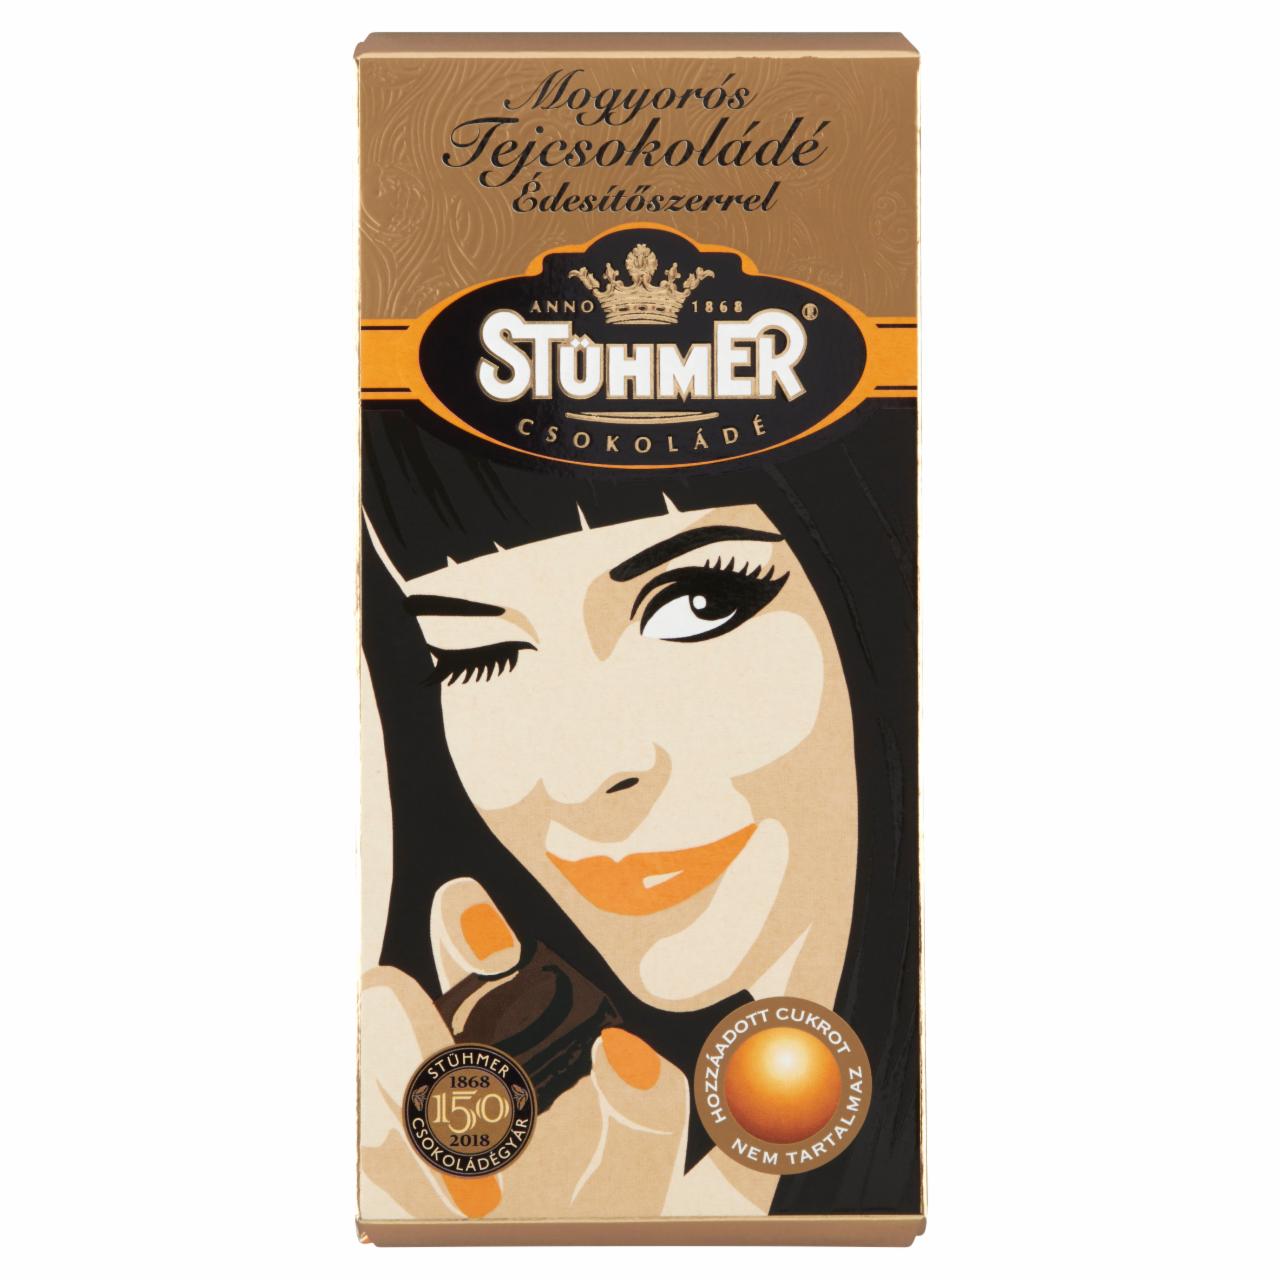 Képek - Stühmer mogyorós tejcsokoládé édesítőszerrel 100 g